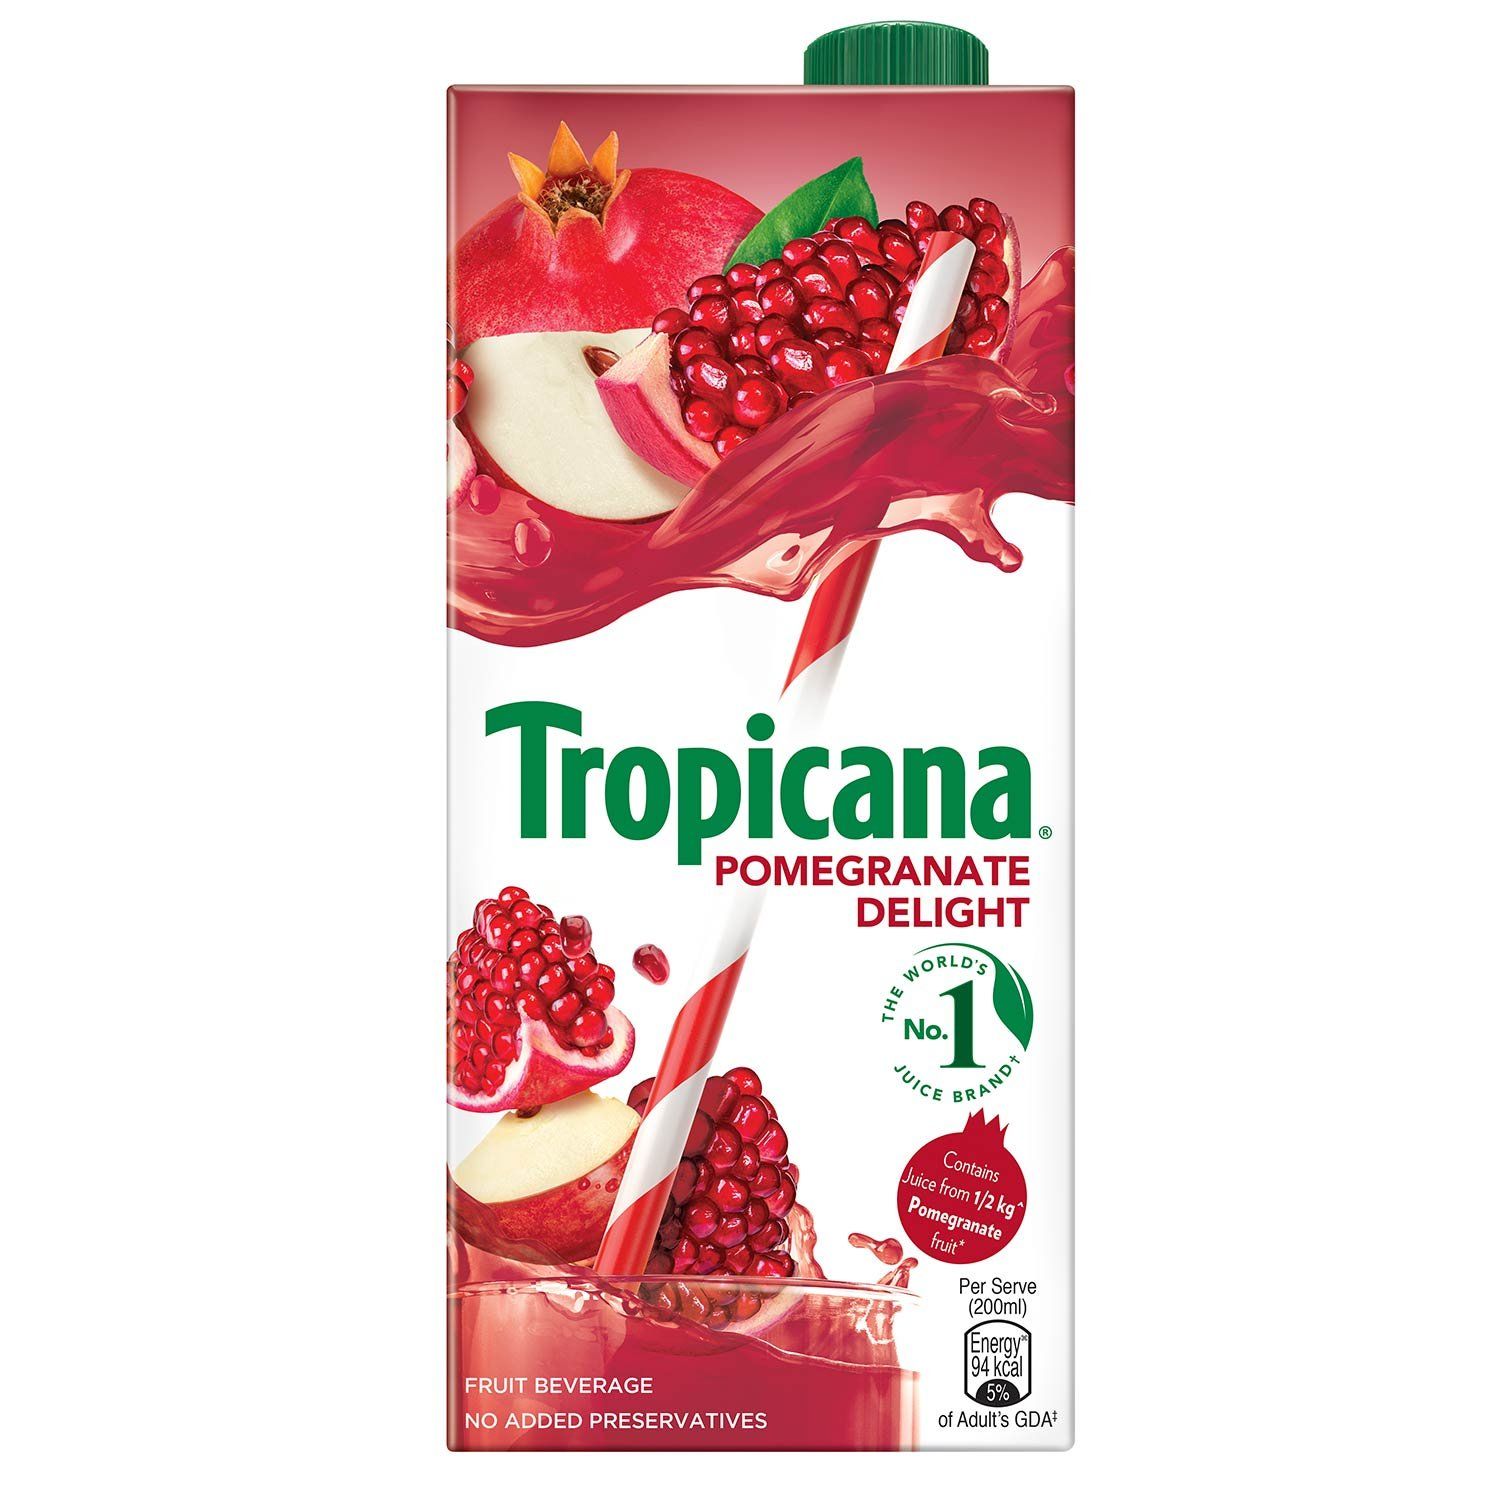 Tropicana Pomegranate Delight Fruit Juice Image